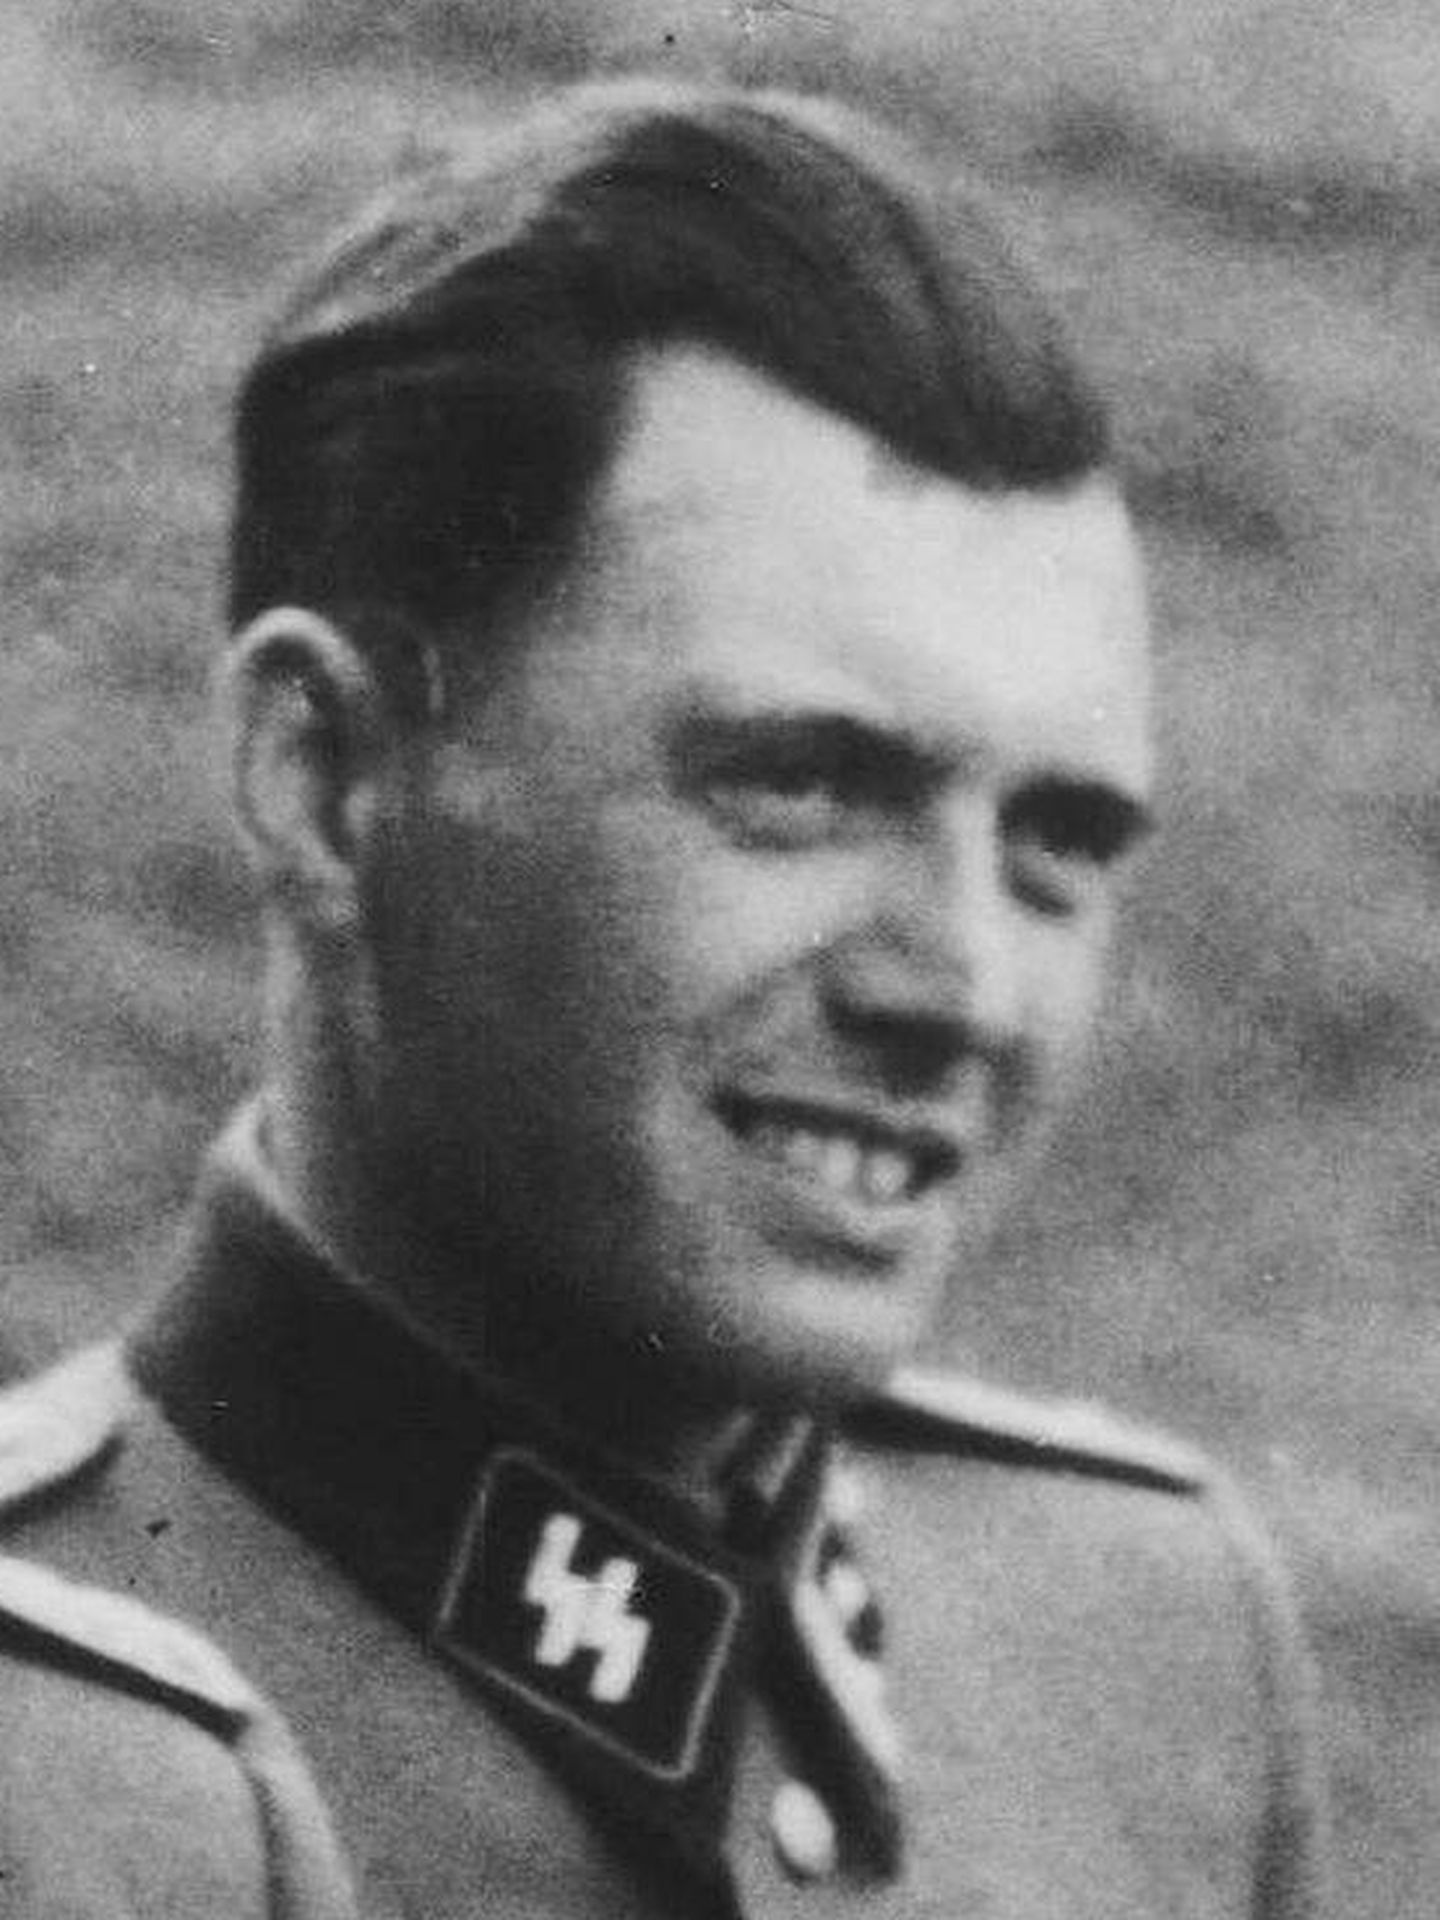 Josef Mengele. 